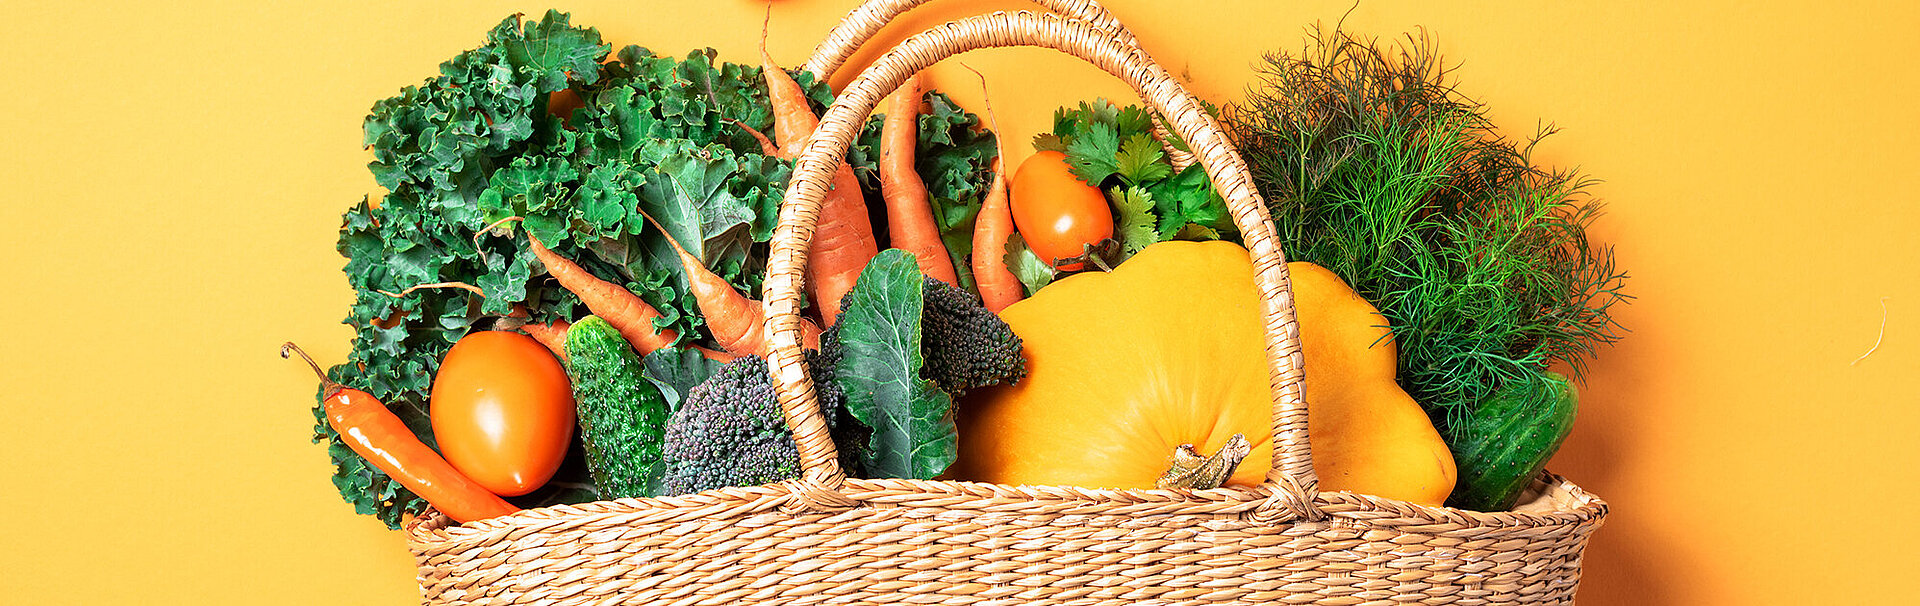 Bild: Strohkorb mit Bio-Gemüse über trendy gelben Hintergrund